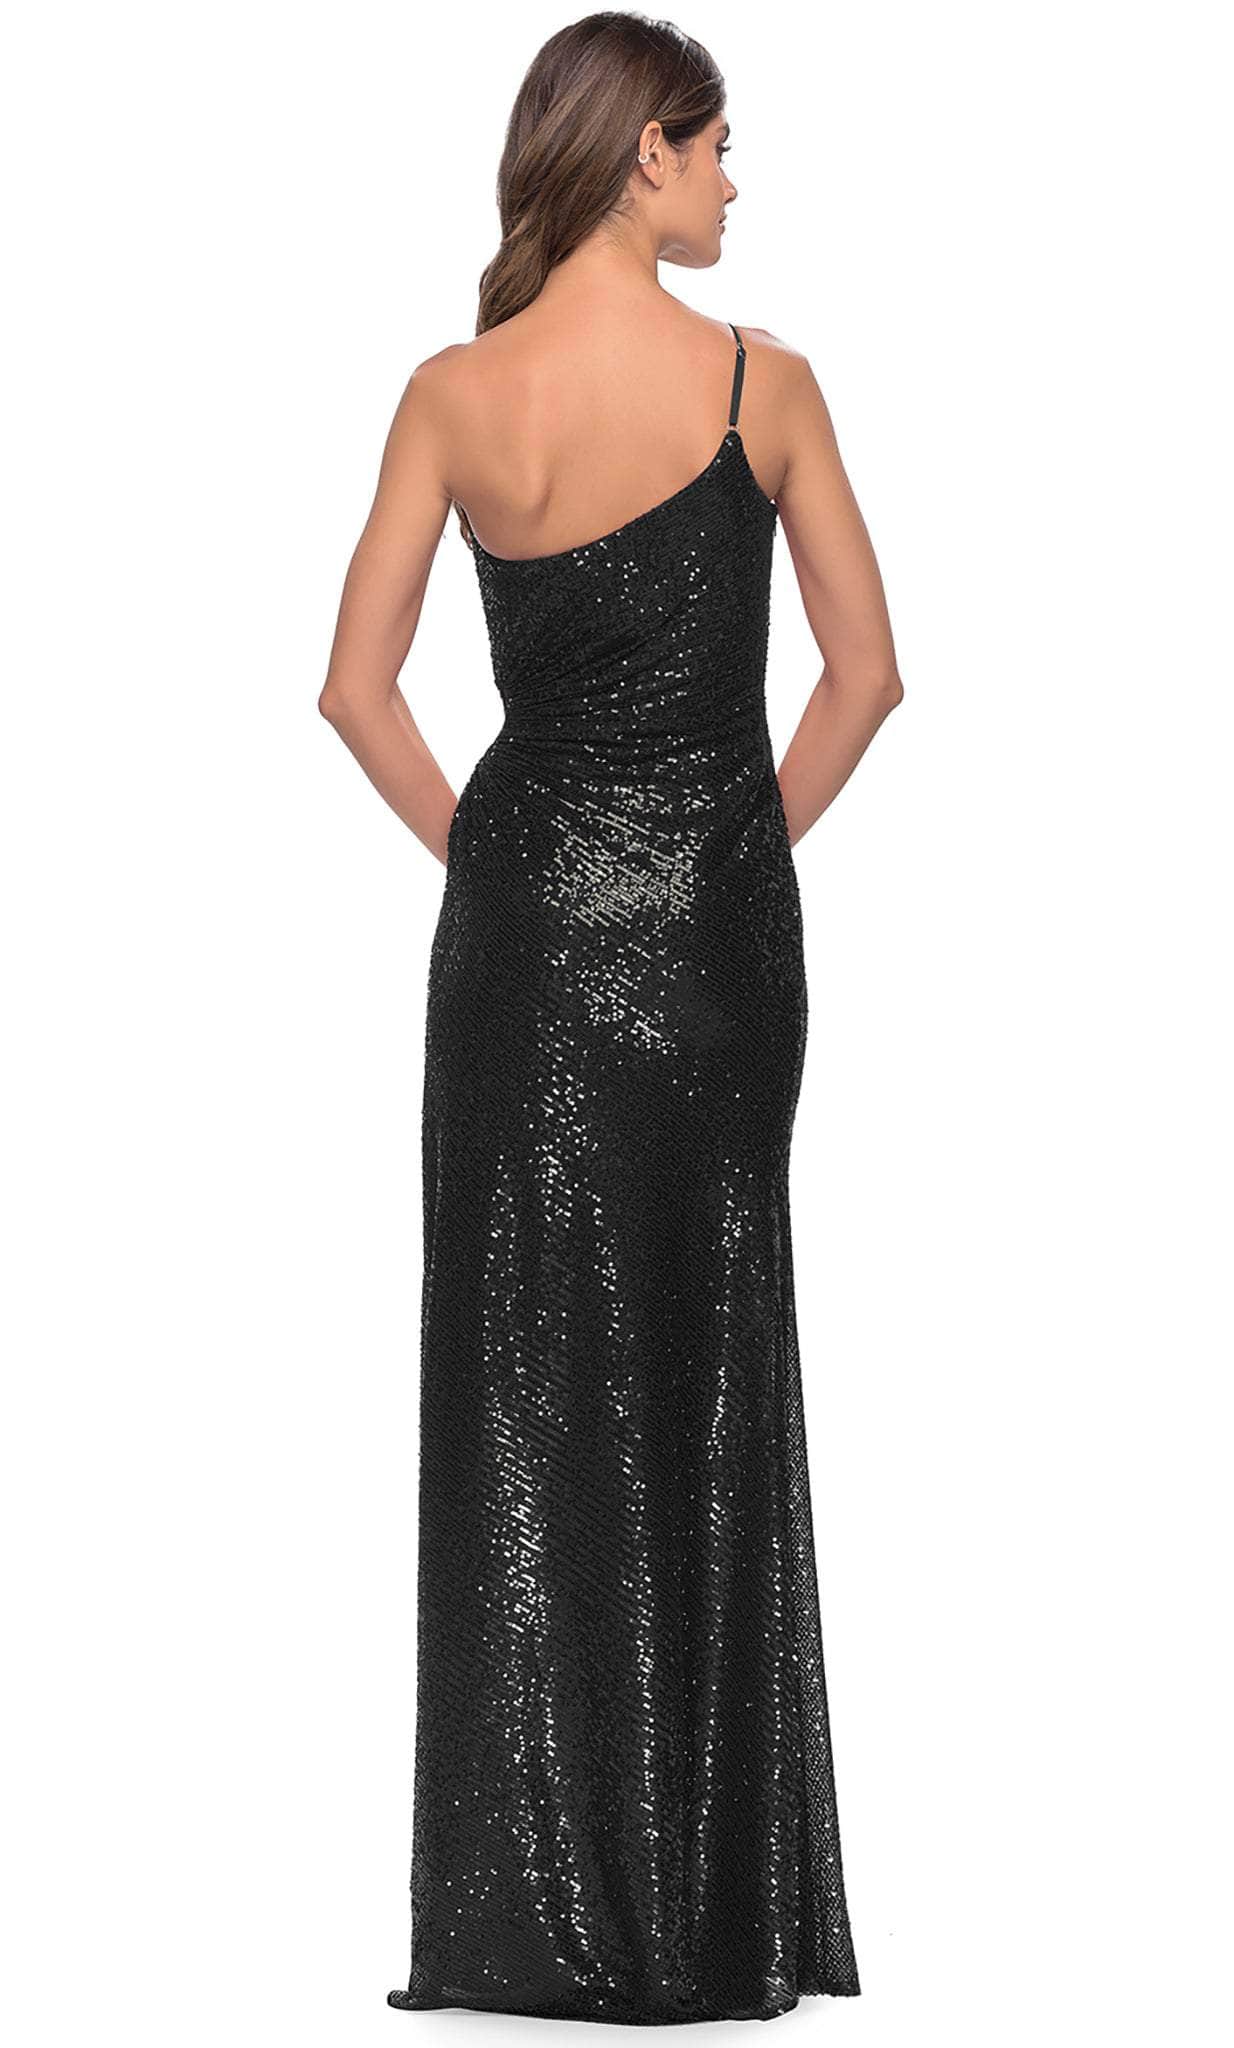 La Femme 31089 - Sequin Dress